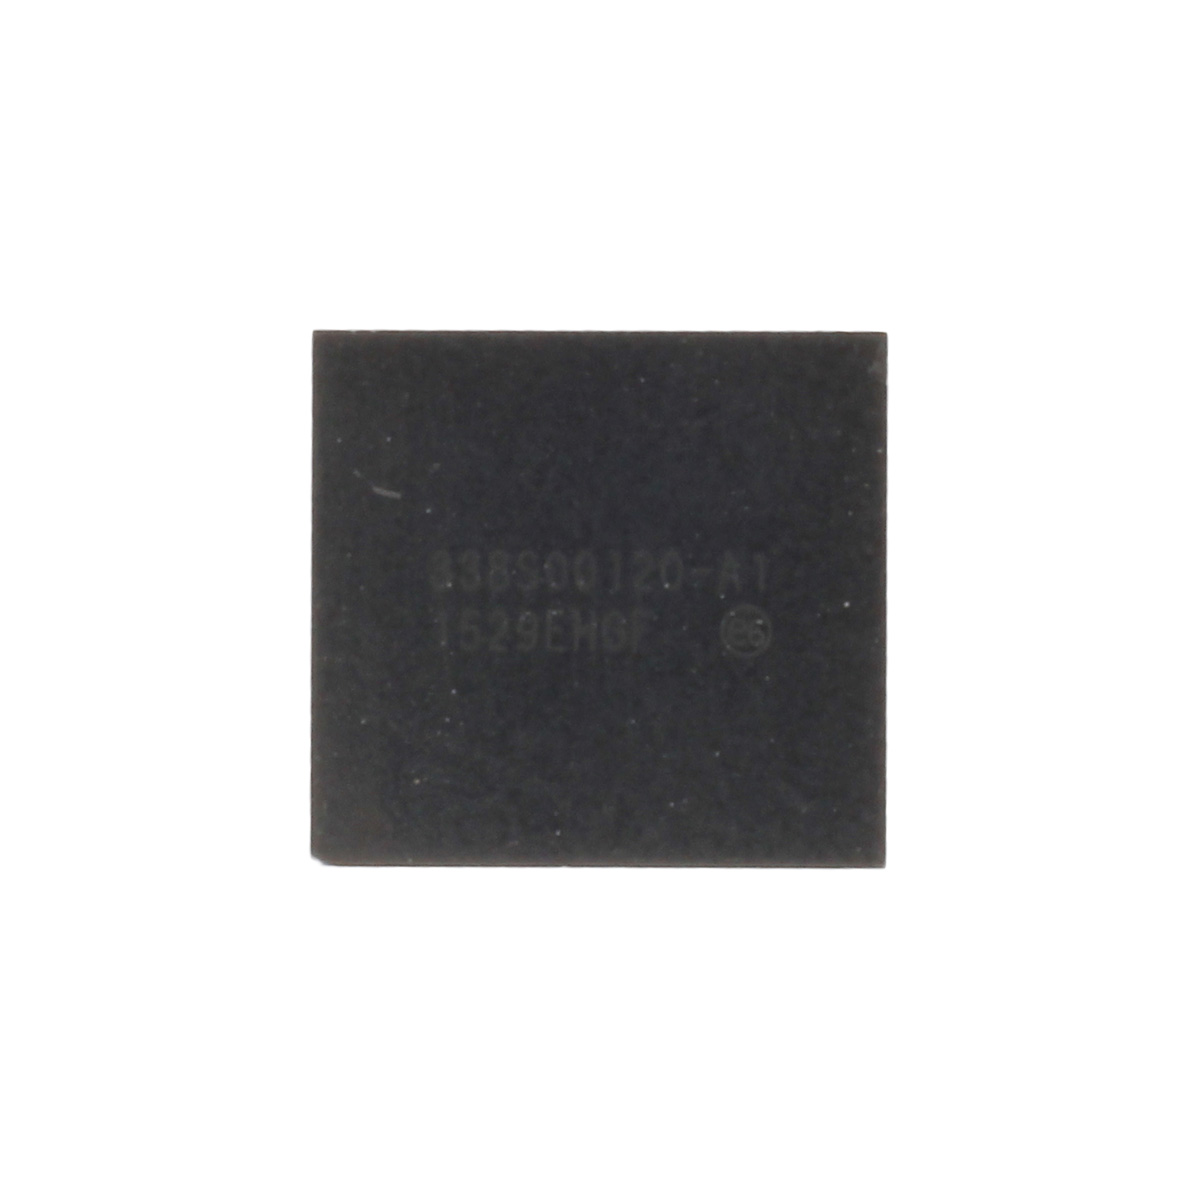 IC-Chip für Power Management Control 338S00120, kompatibel mit iPhone 6s